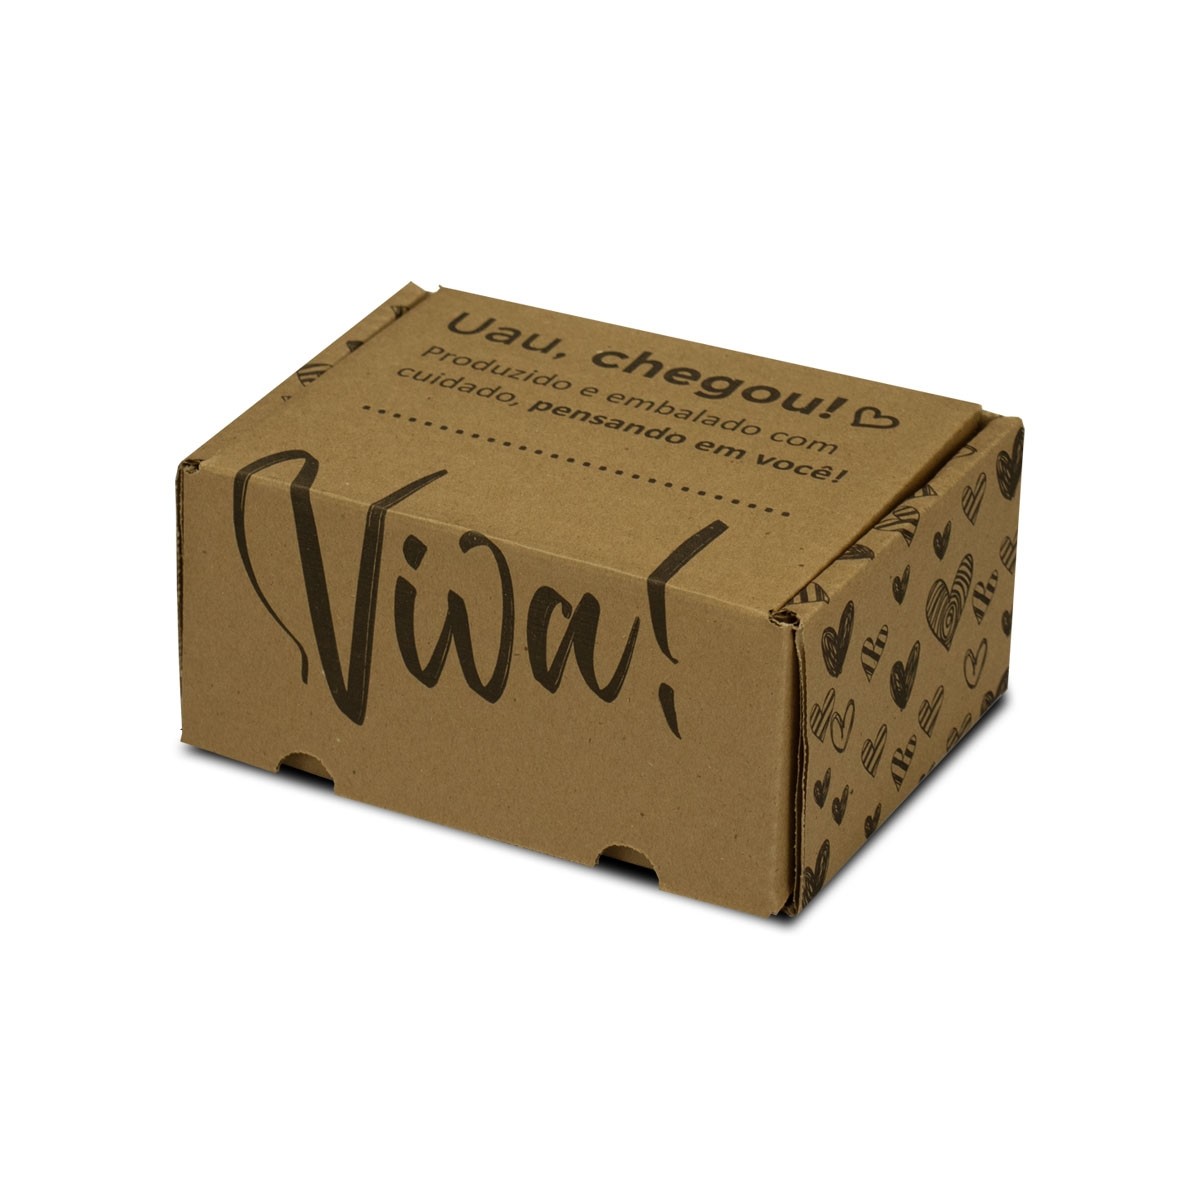 Caixa de Papelão Sedex 01 (16x12x8) Coleção Viva